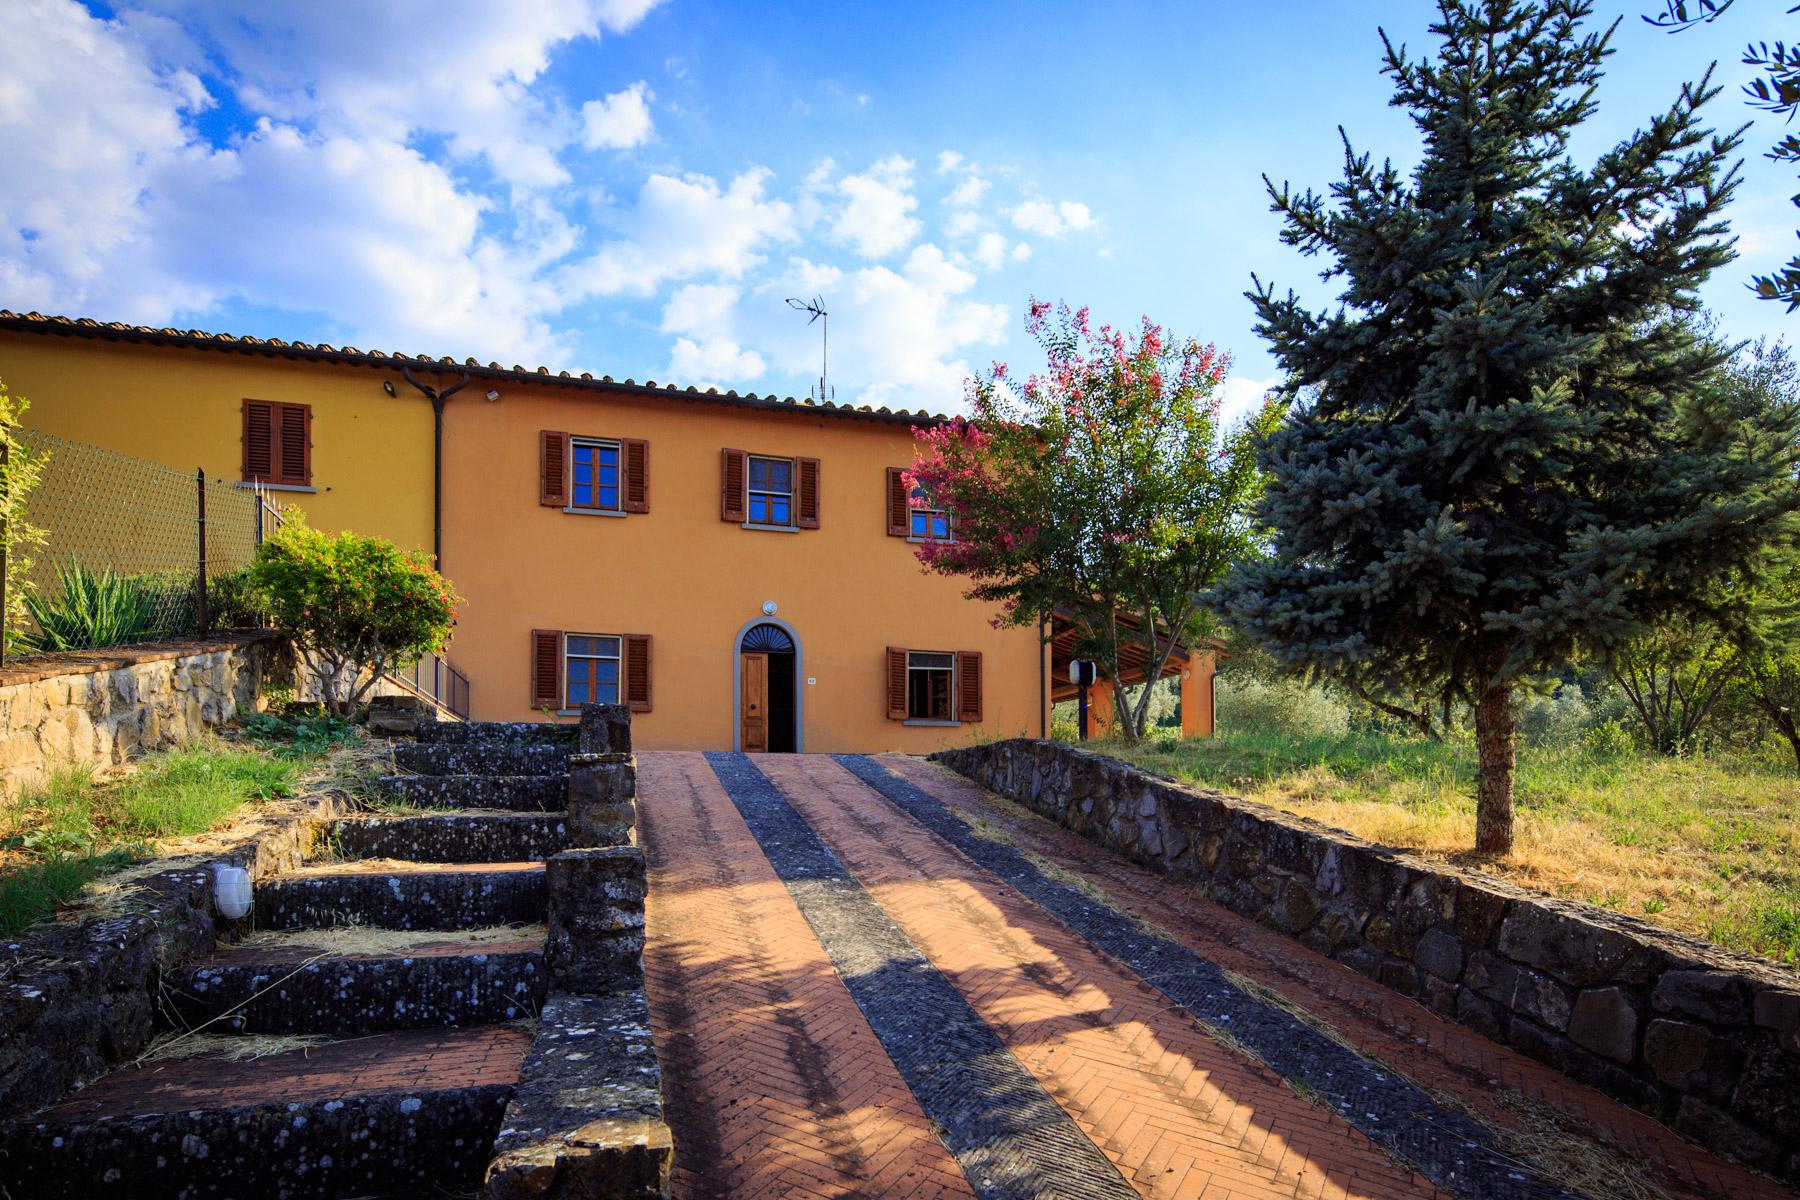 Maestosa Villa Rinascimentale sulle Colline Fiorentine con Cantina e Vigneto - 27